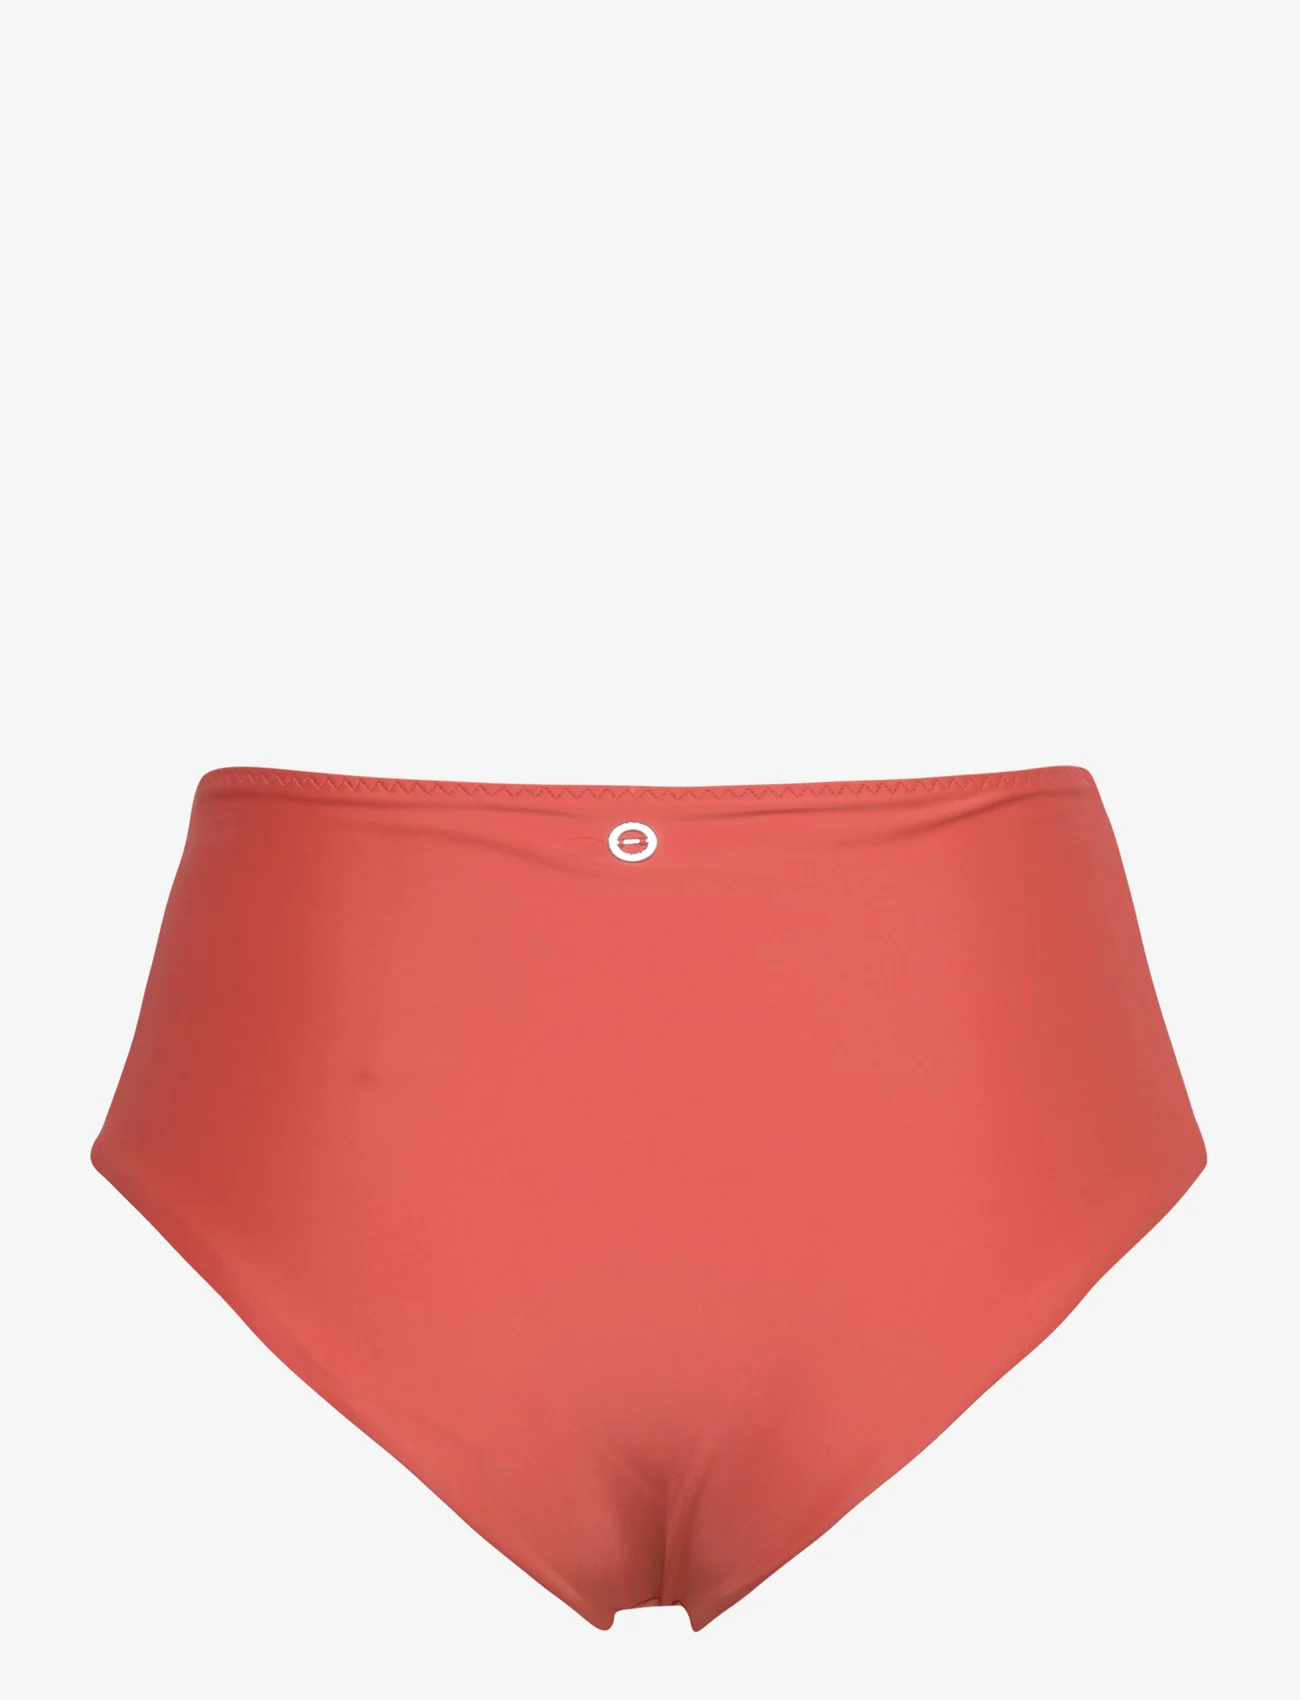 Casall - High Waist Bikini Hipster - korkeavyötäröiset bikinihousut - dk papaya red - 1